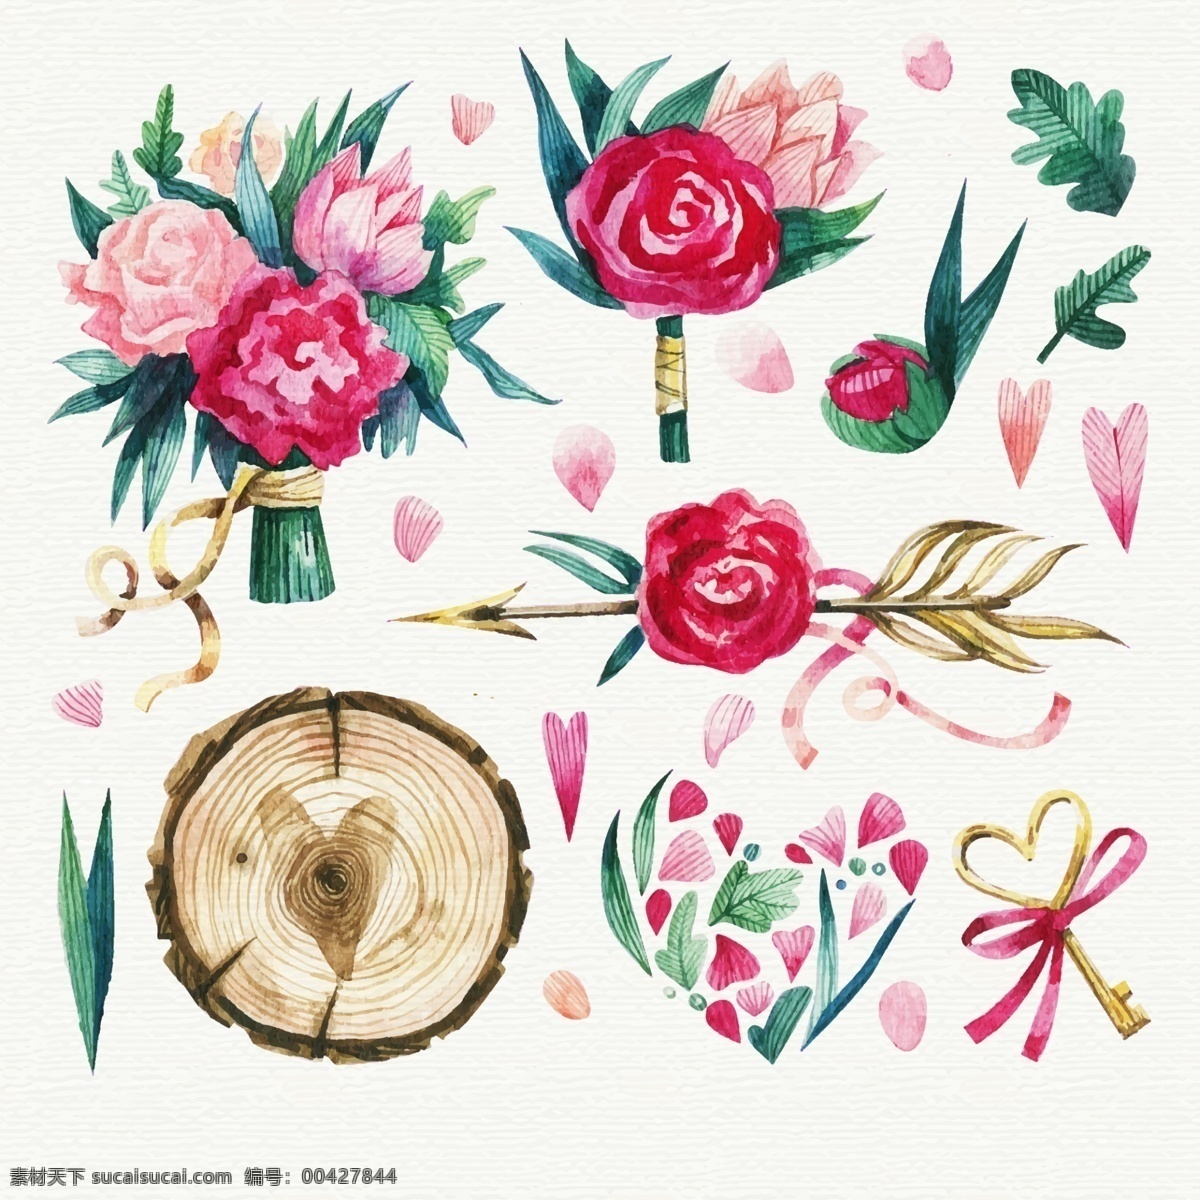 木桩和玫瑰 木桩 玫瑰 手绘 插画 红玫瑰 艺术 装饰